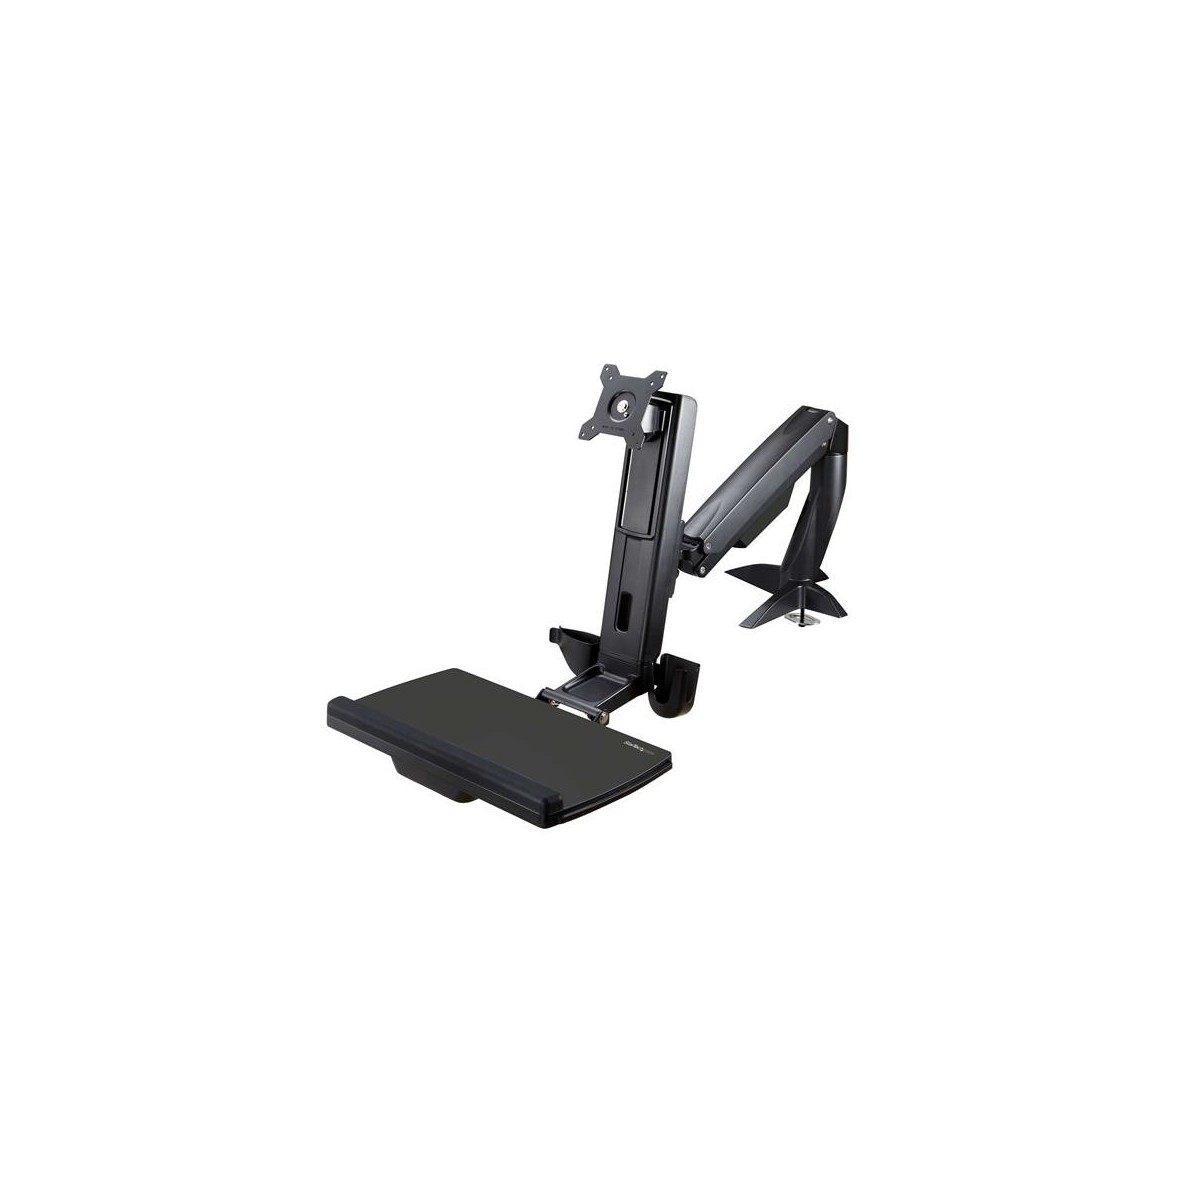 StarTech.com Sit Stand Monitor Arm - Desk Mount Adjustable Sit-Stand Workstation Arm for Single 34" VESA Mount Display - Ergonom